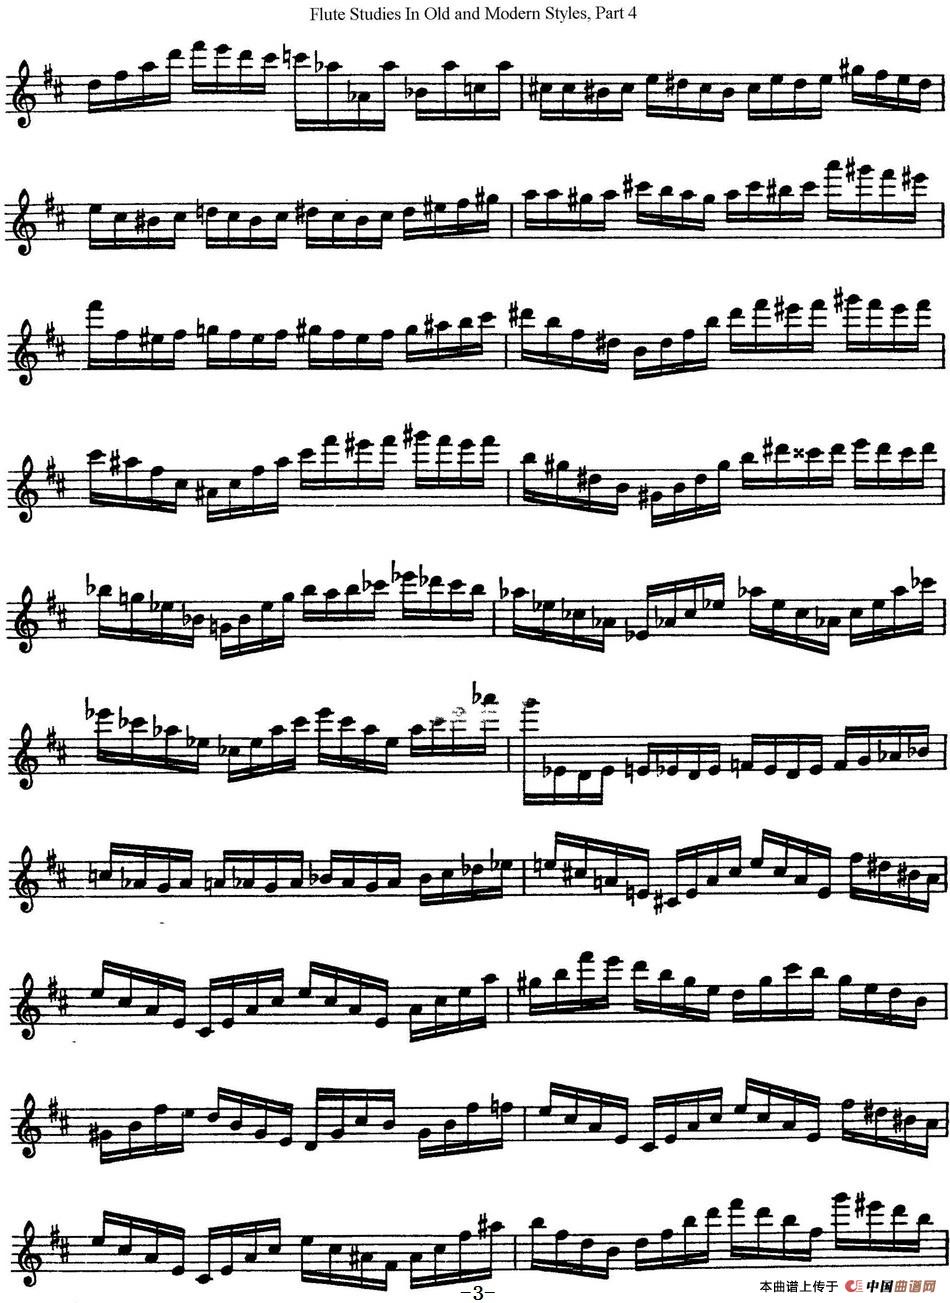 斯勒新老风格长笛练习重奏曲（第四部分）（N